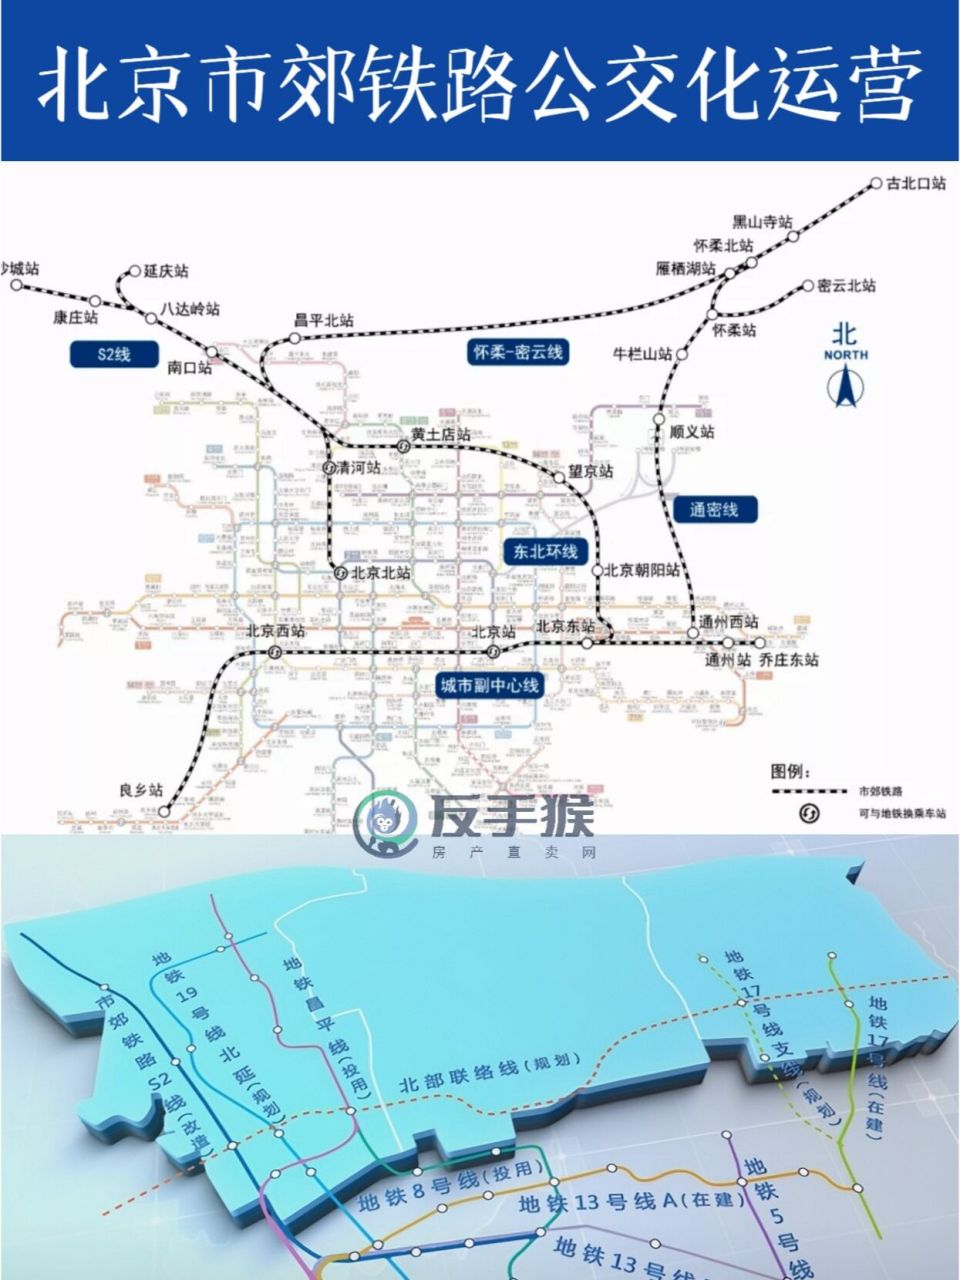 北京市郊铁路东北环线未来将公交化运行 市域(郊)铁路城市副中心线